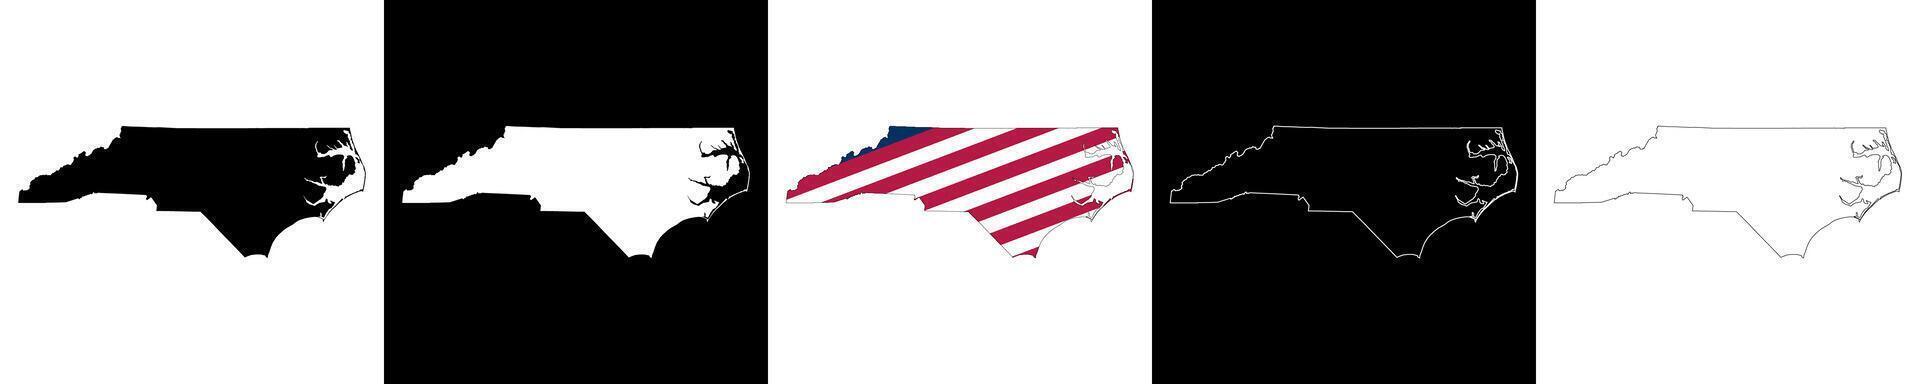 North Carolina state outline map set vector